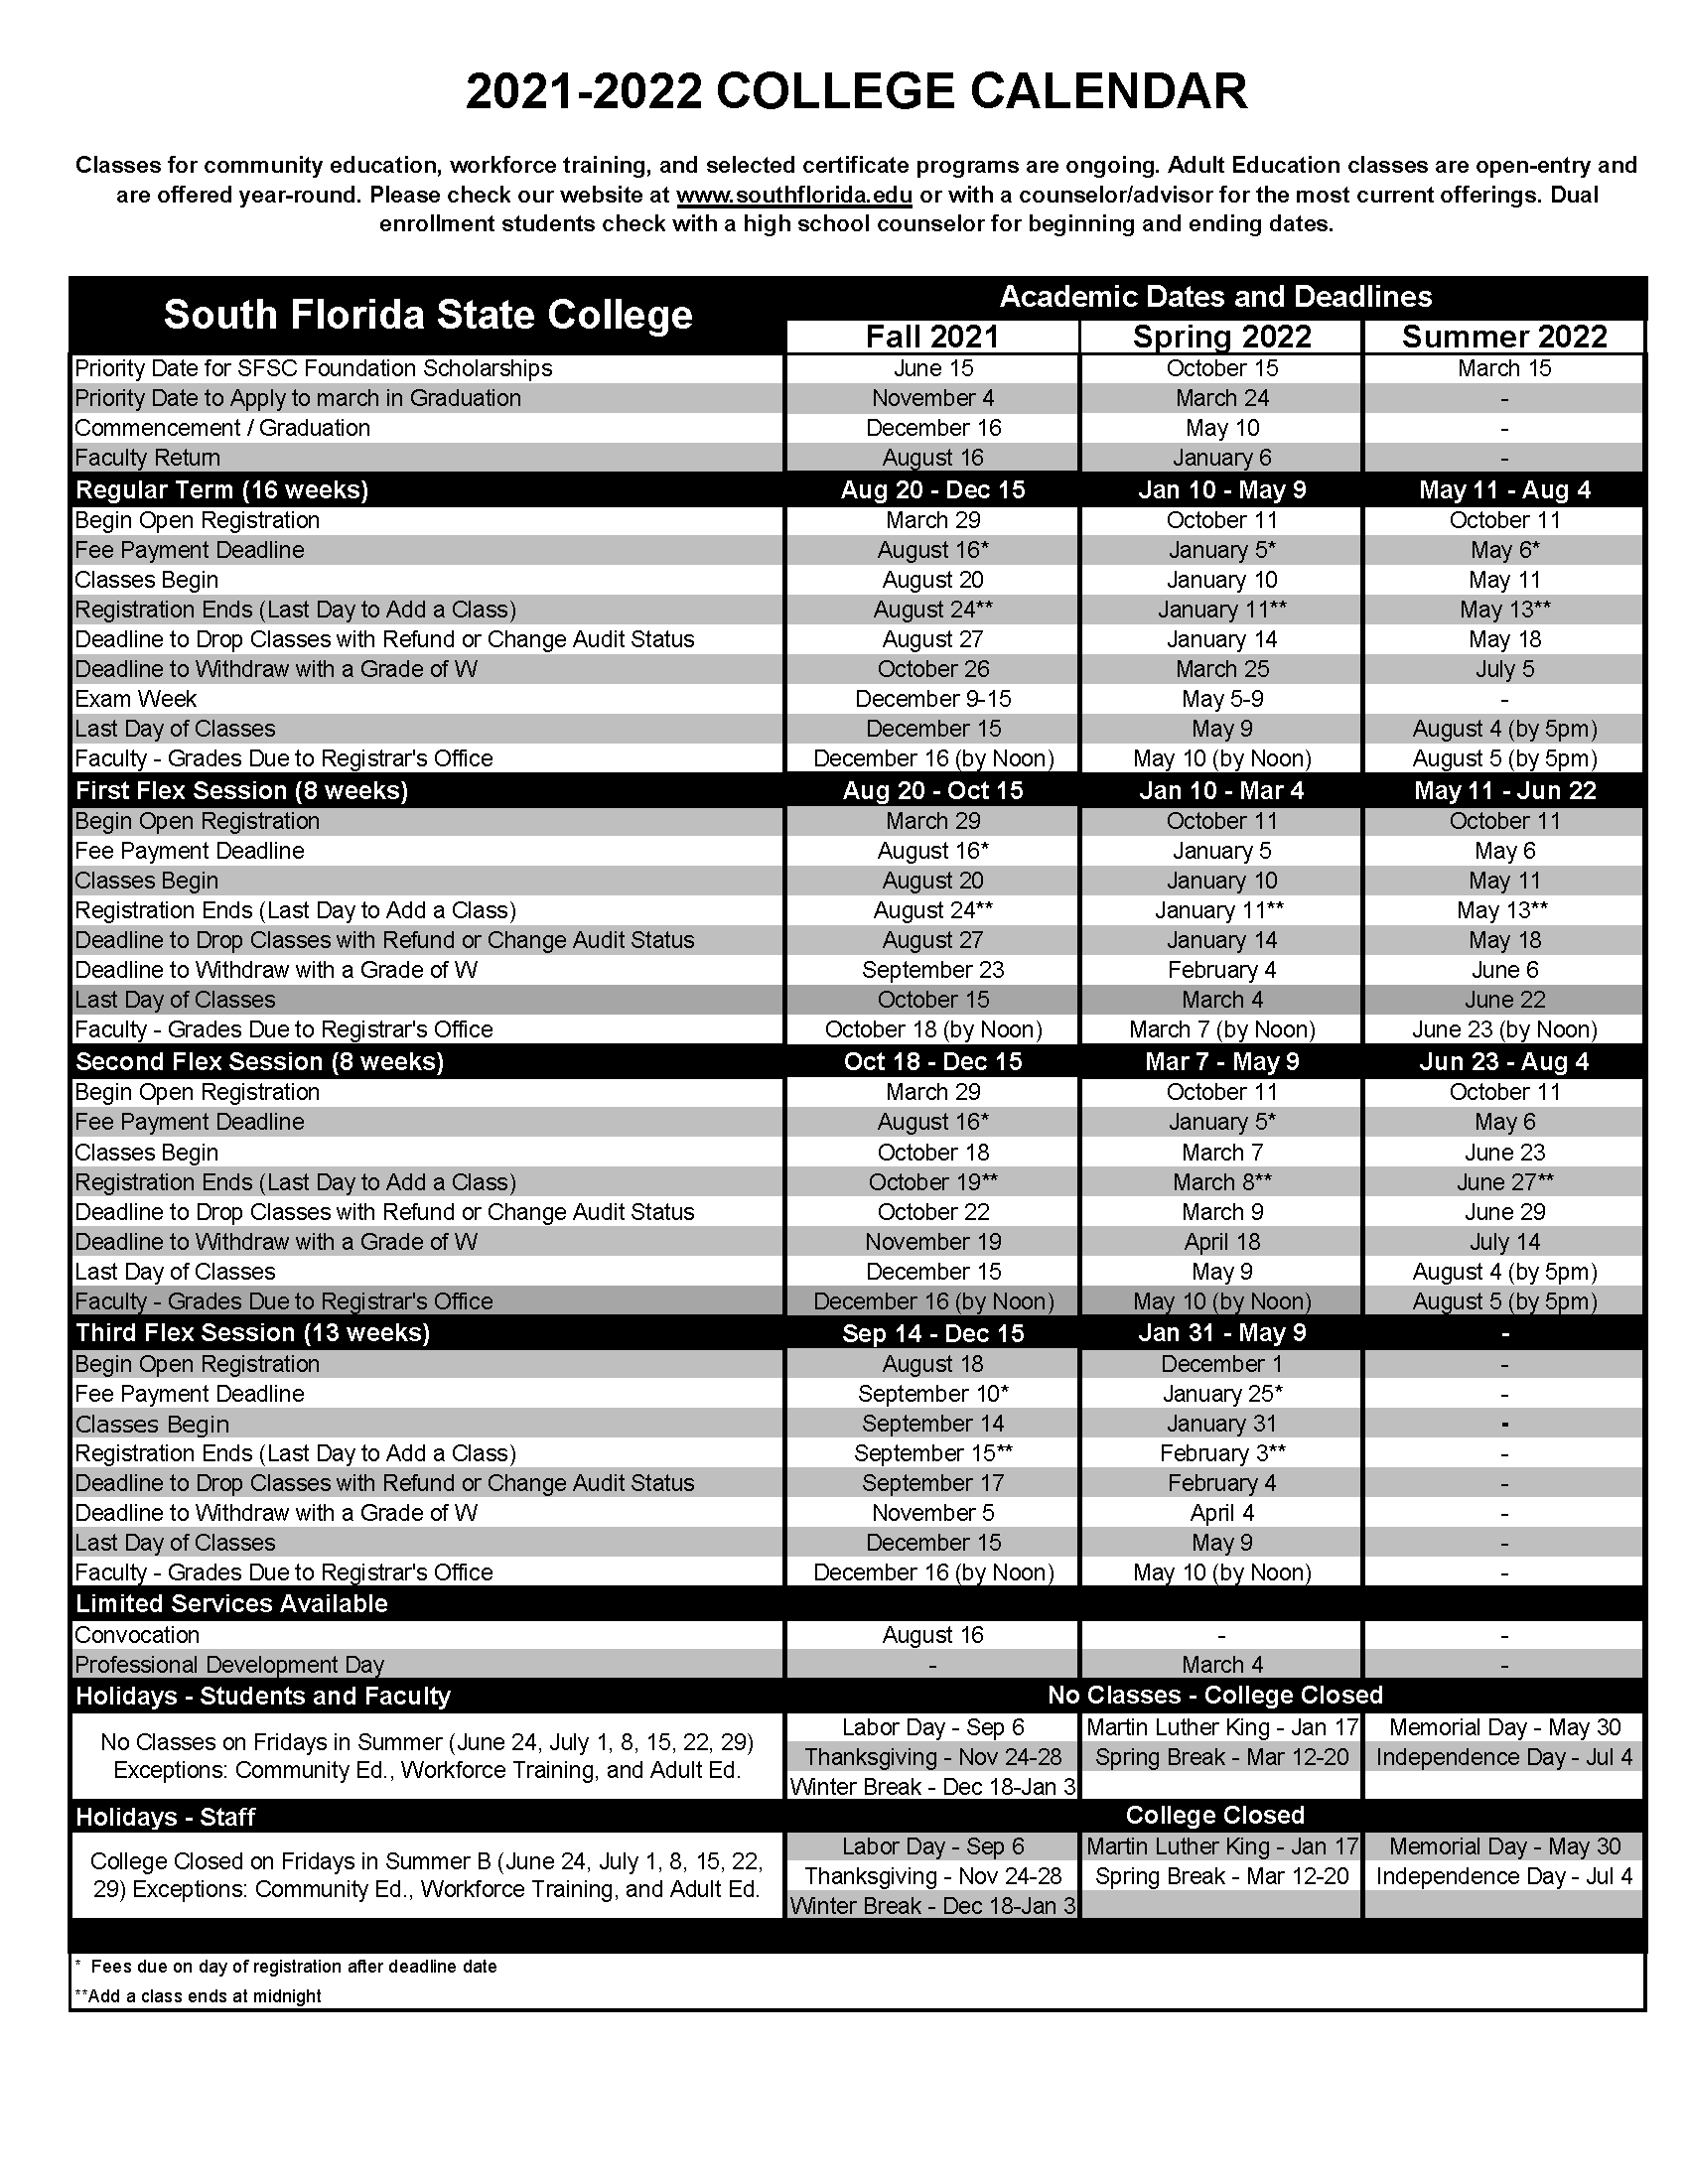 Fsu Calendar Fall 2022 Academic Calendar 2021-2022 - College